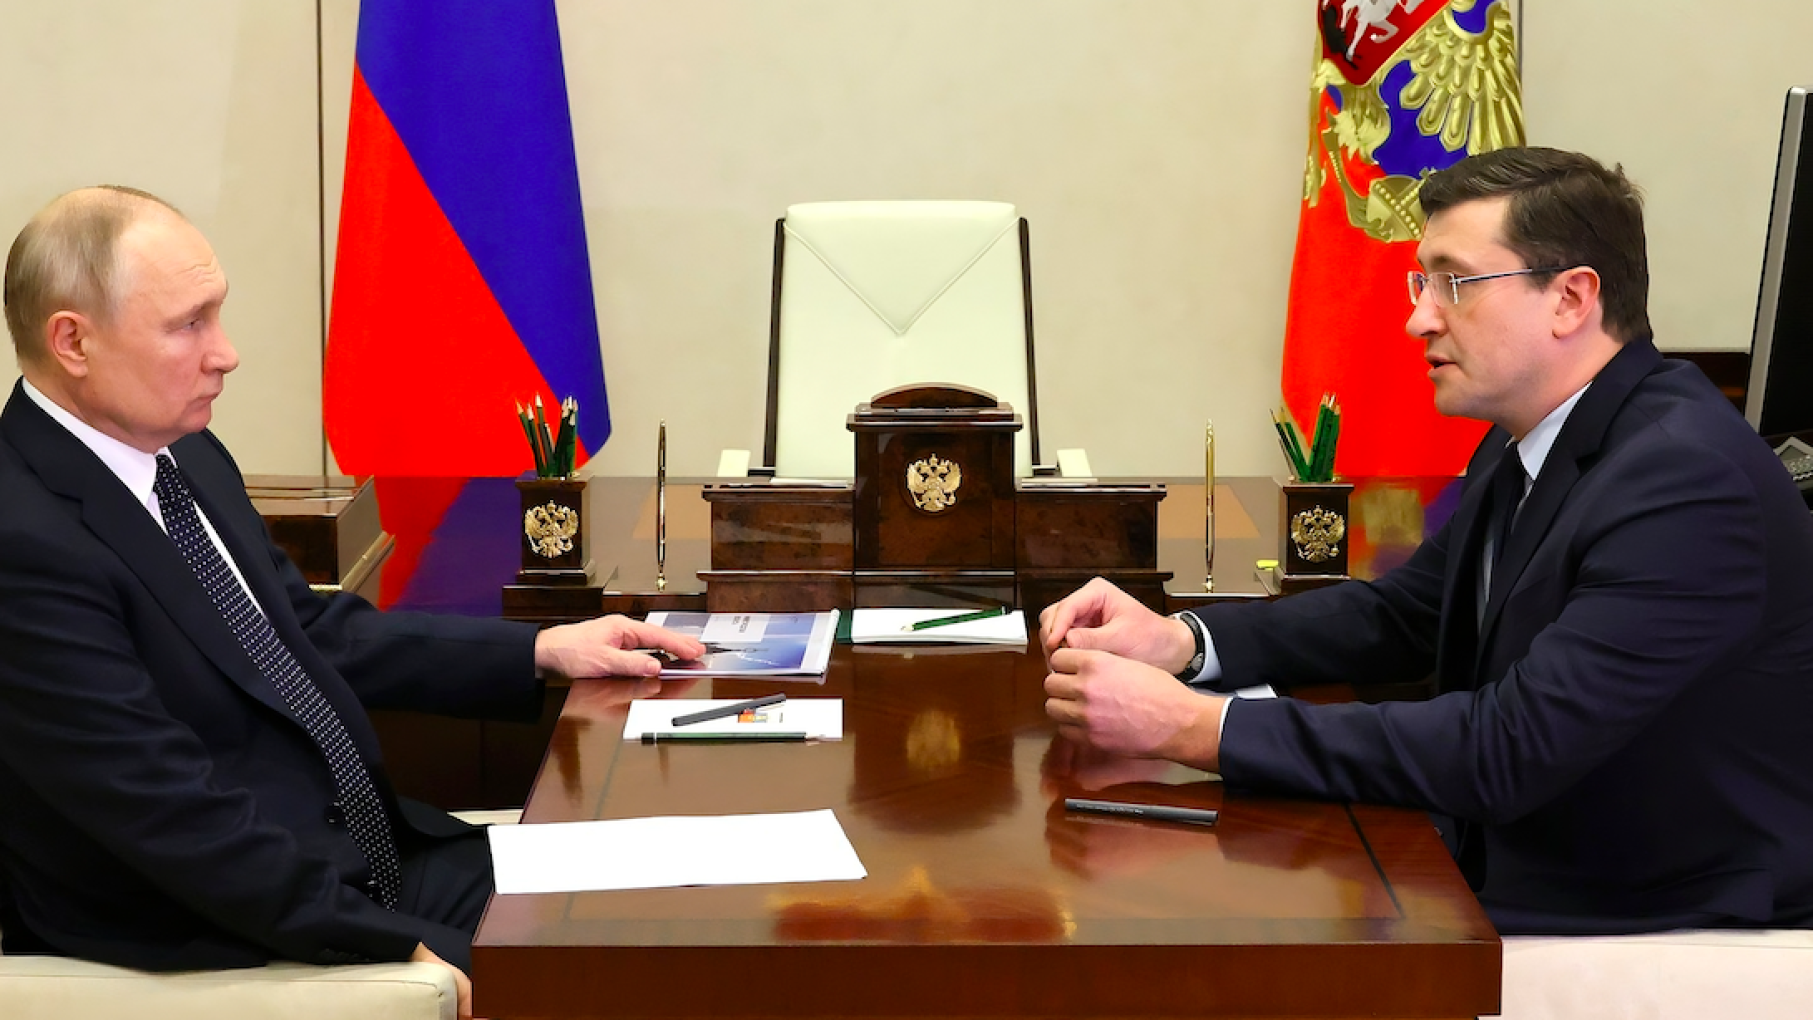 О чем говорили на встрече Владимир Путин и Глеб Никитин